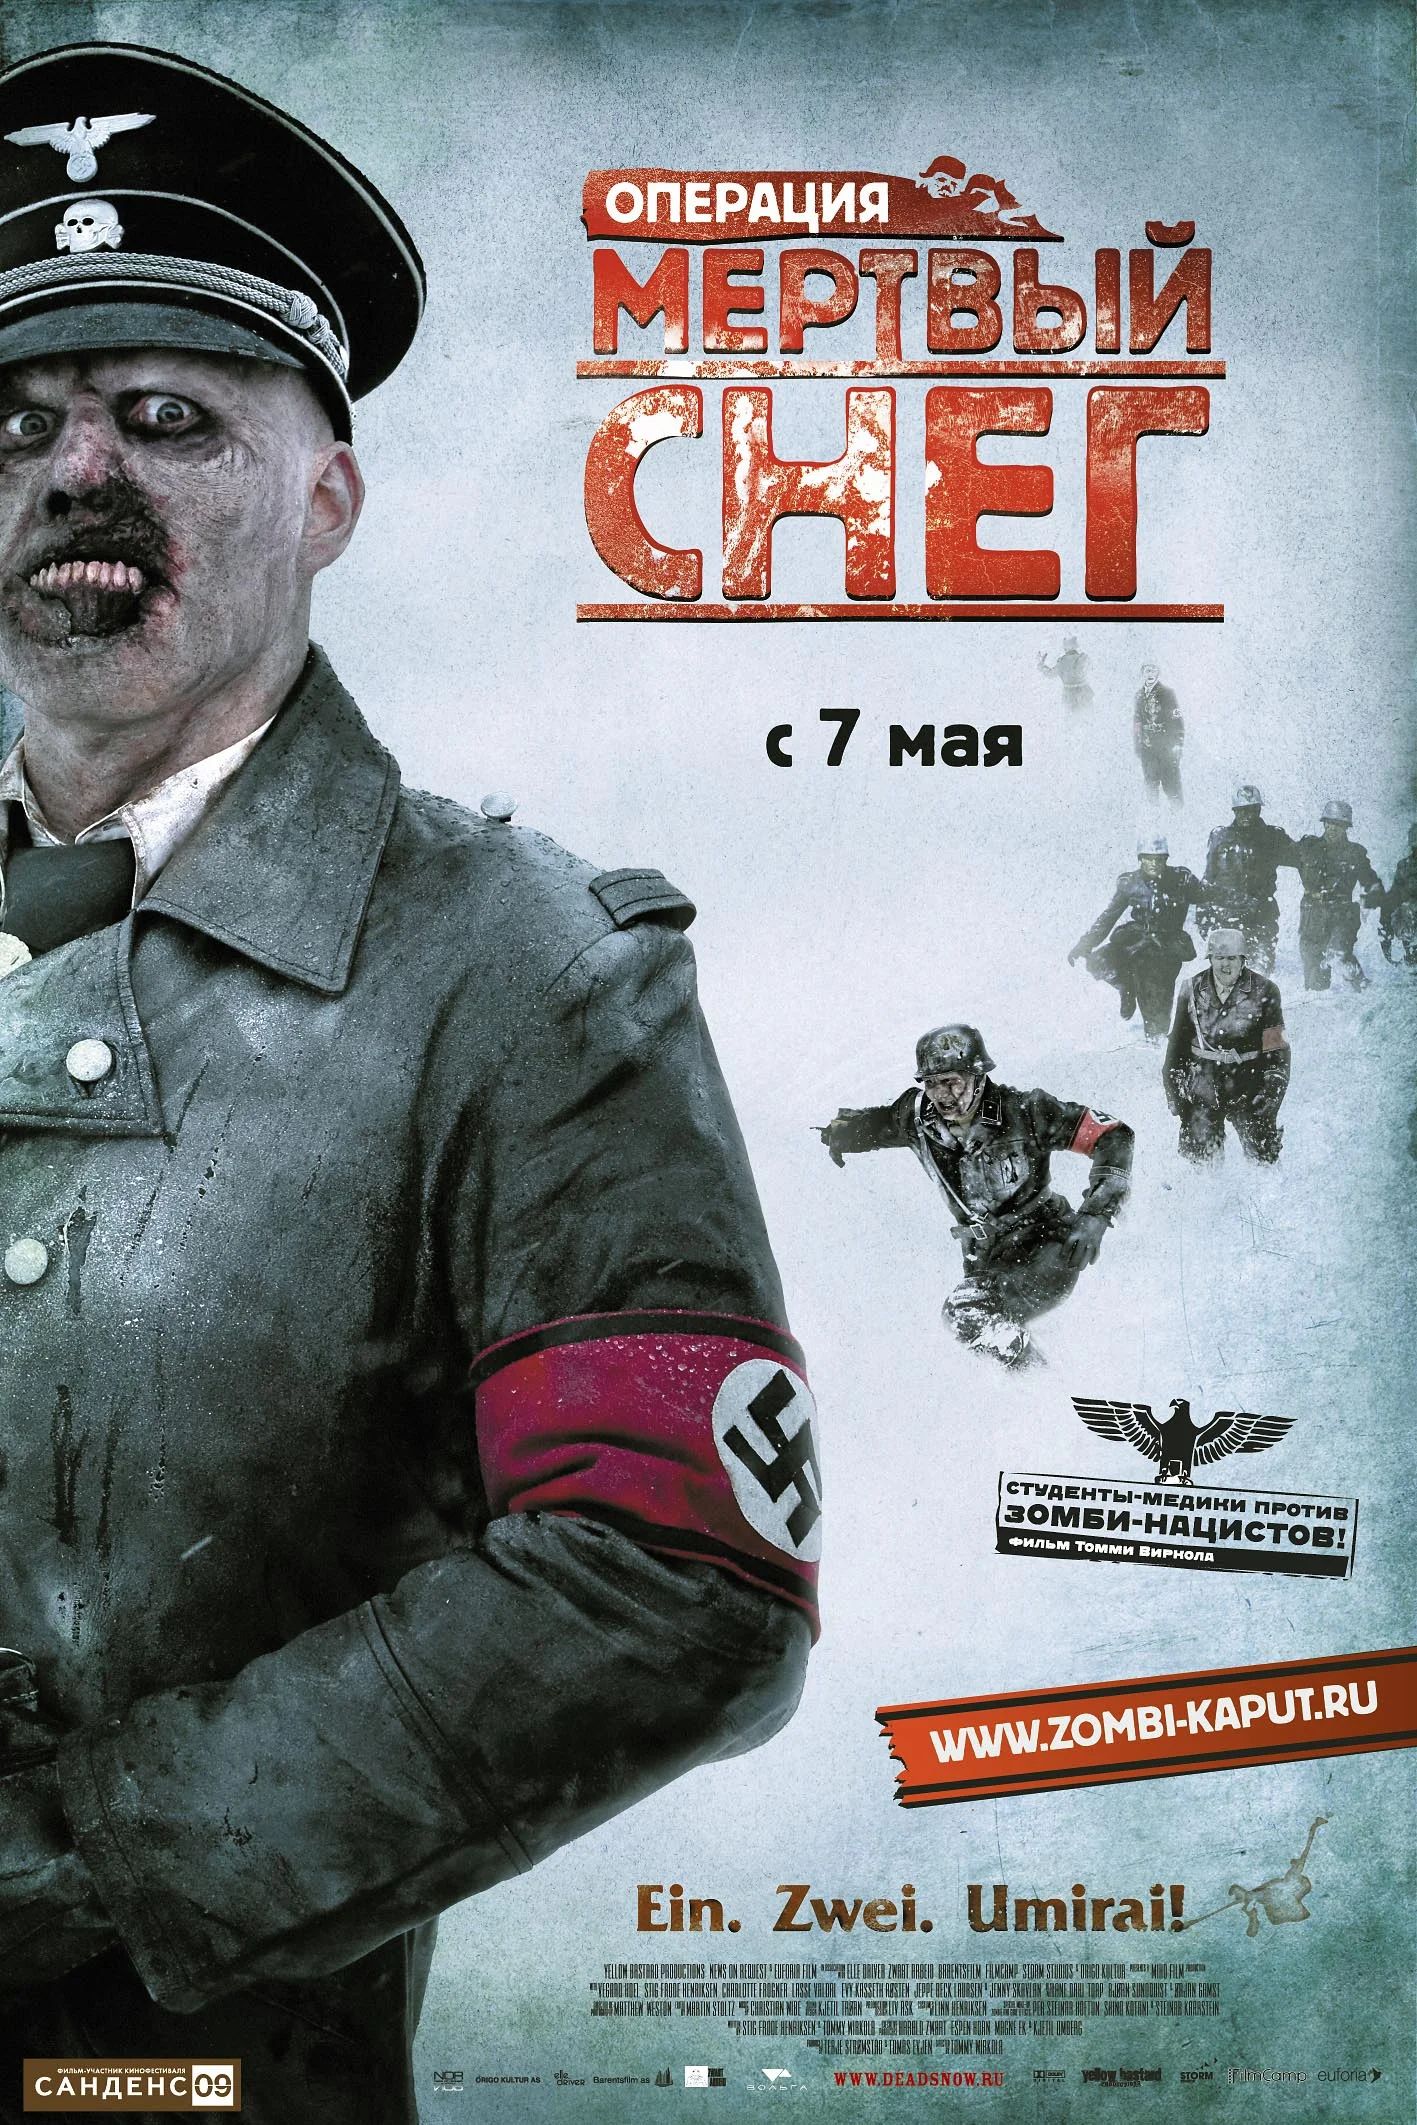 Официальный постер фильма «Операция “Мертвый снег”»